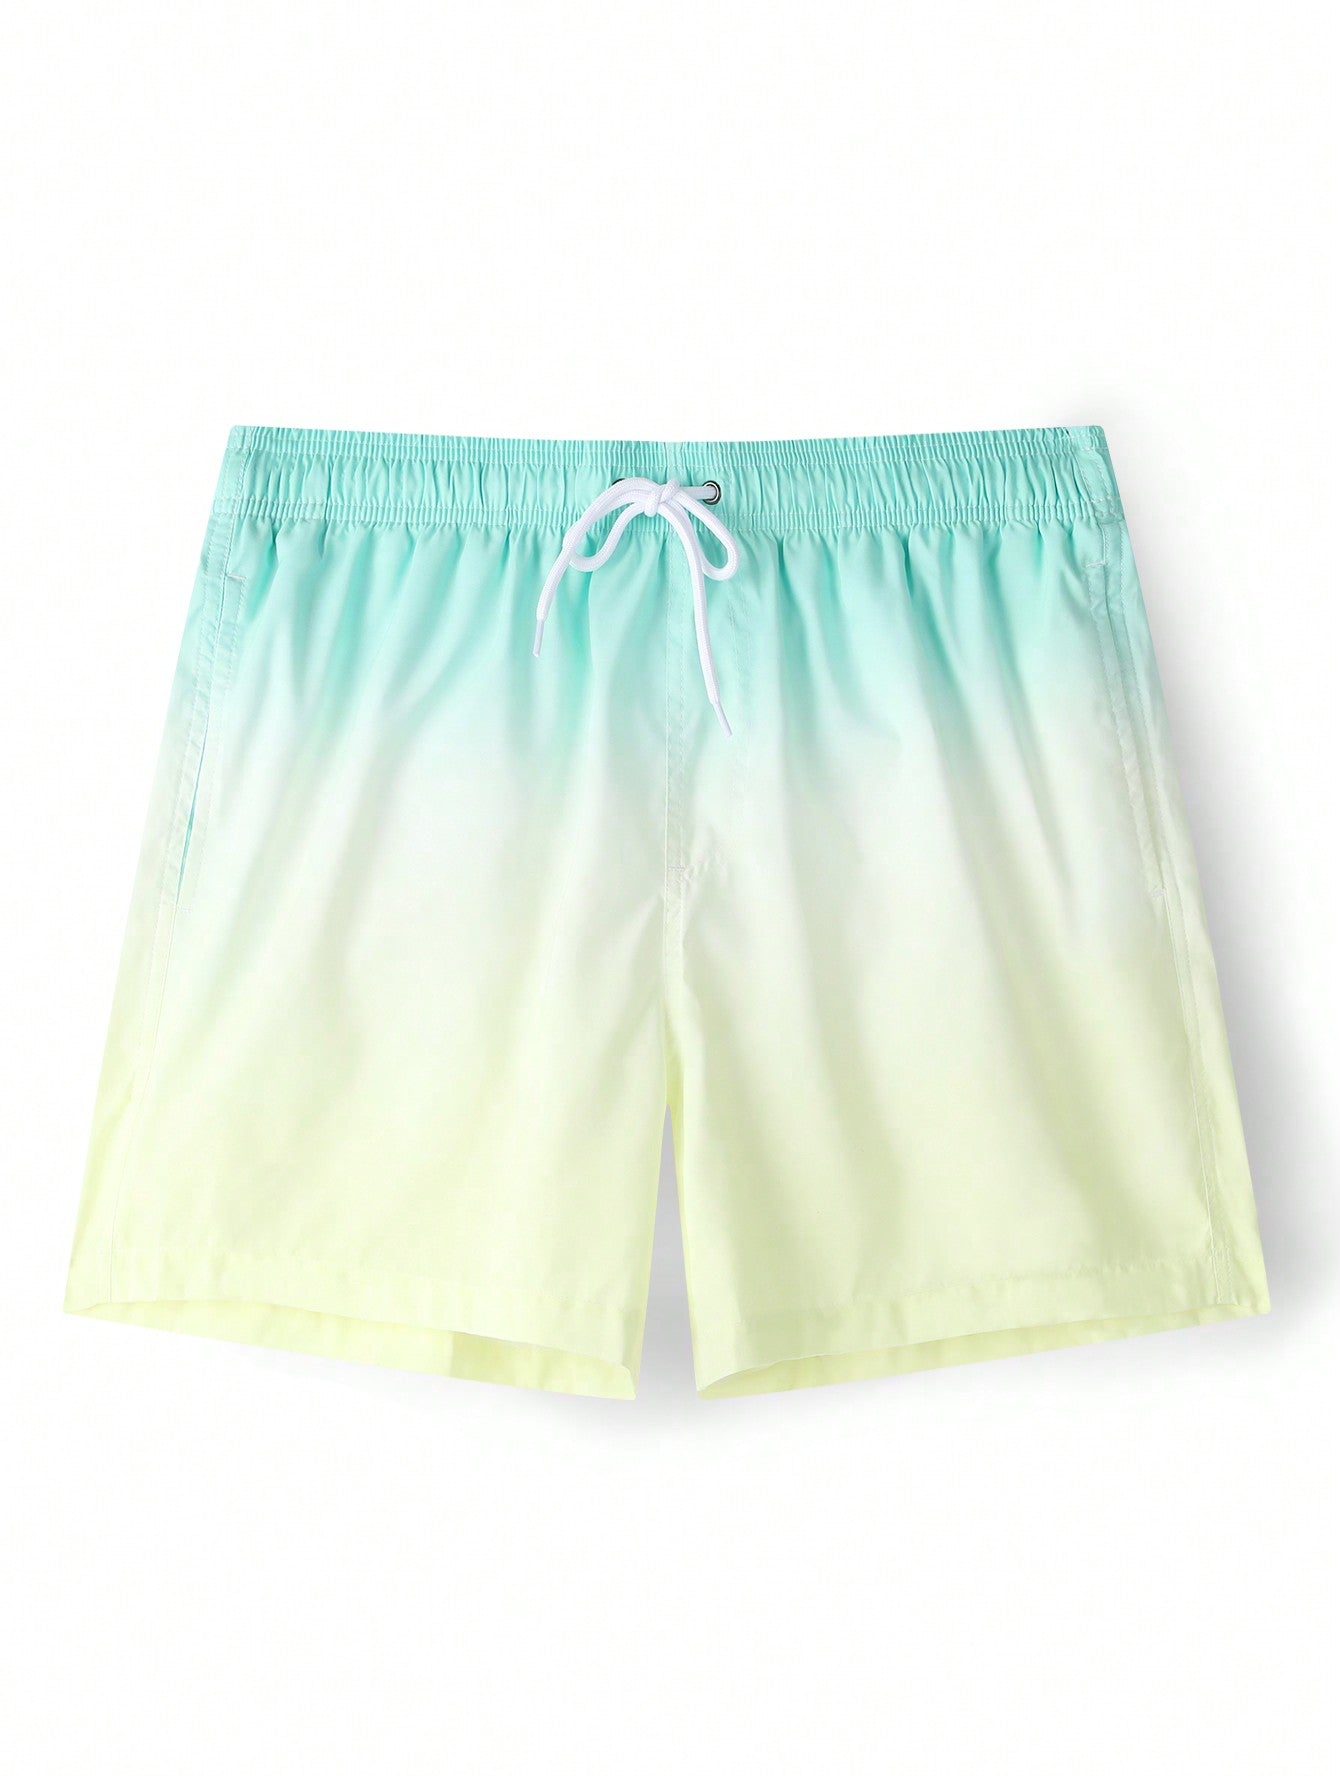 Men'S Ombre Drawstring Waist Beach Shorts